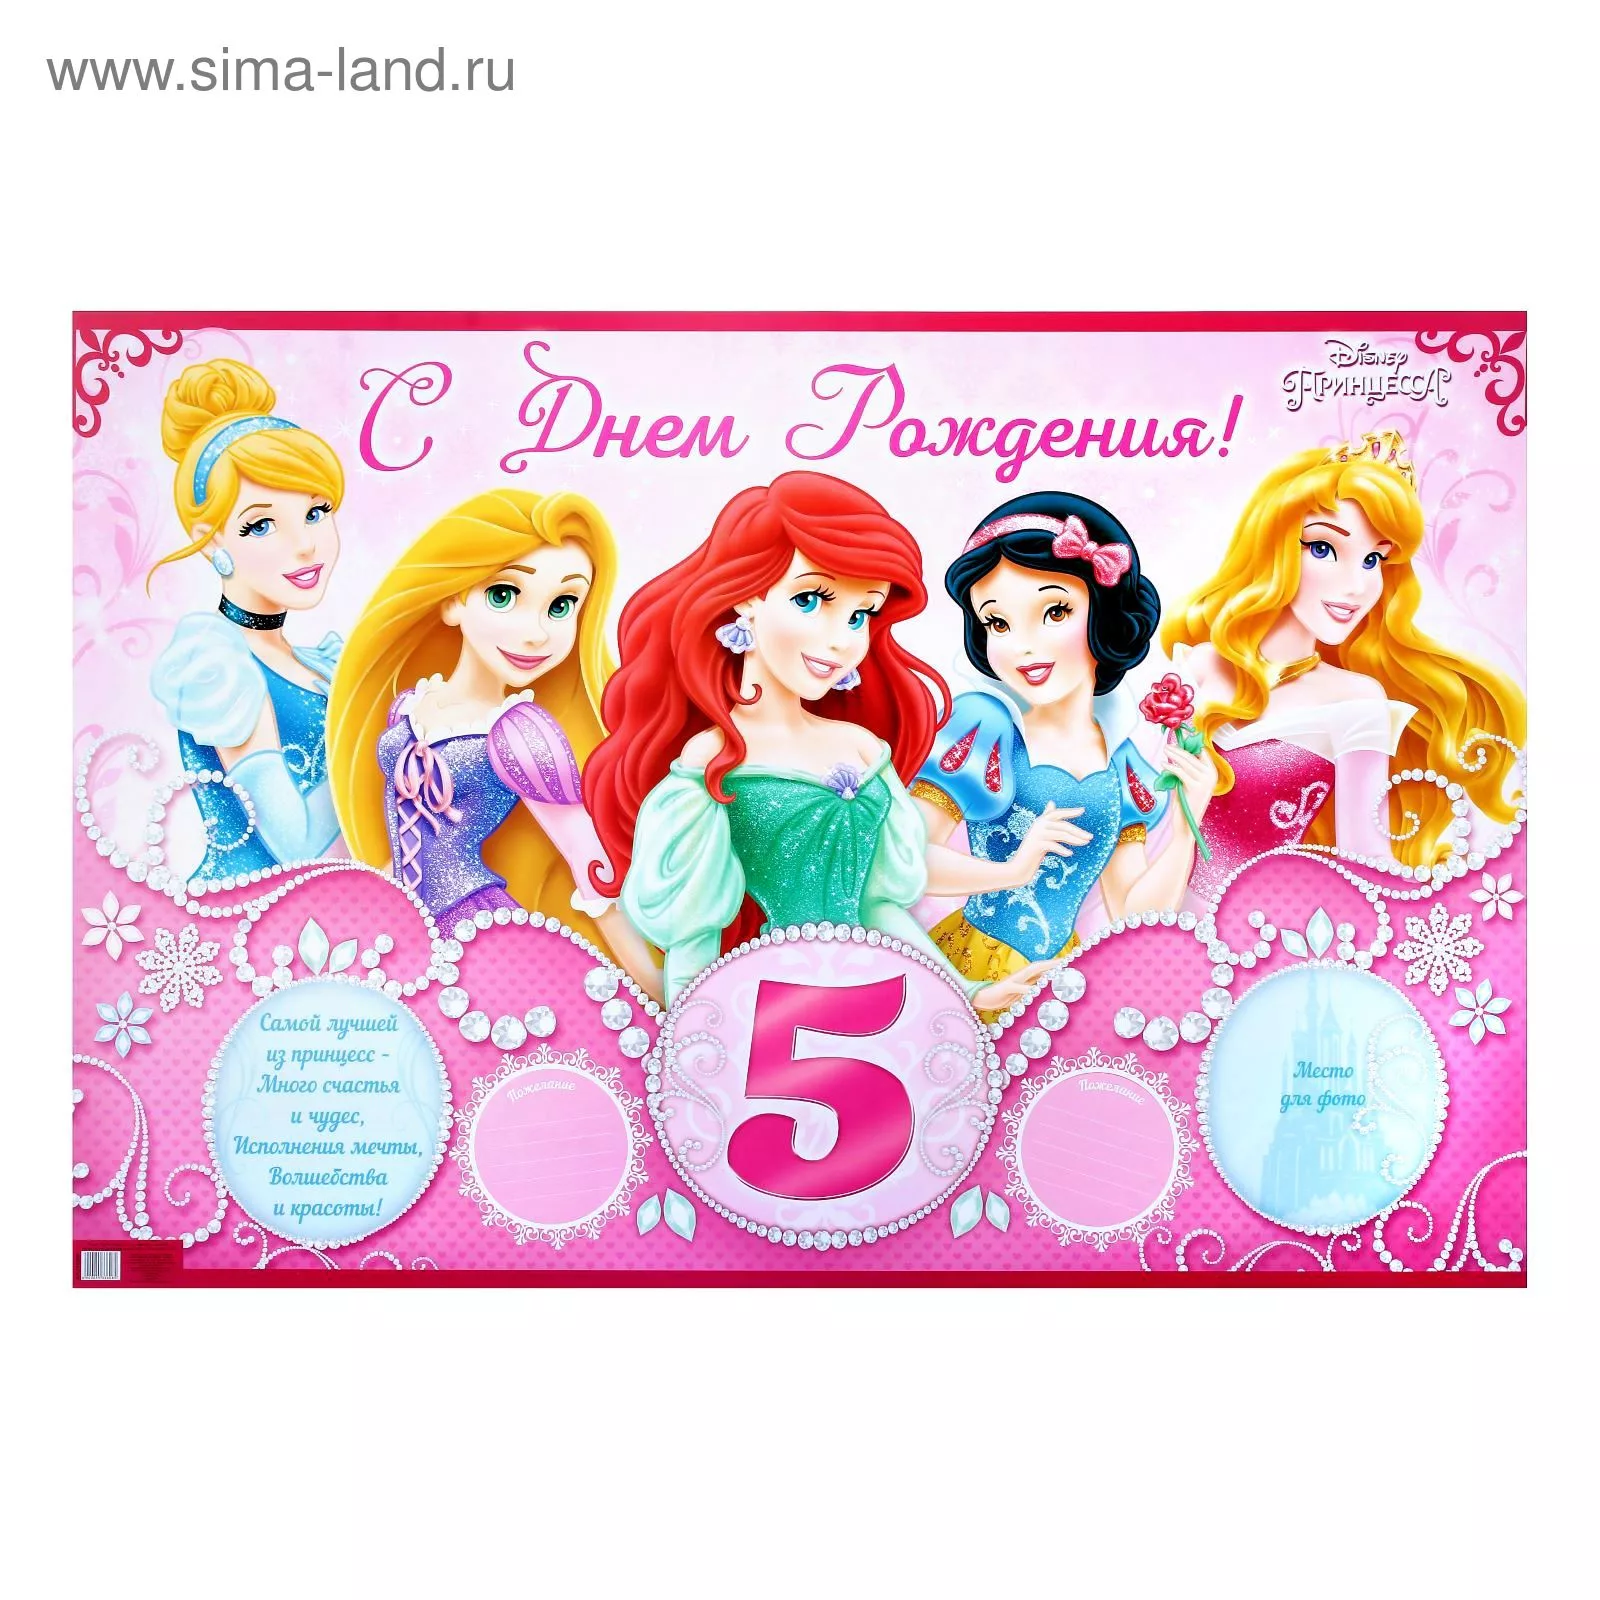 Открытки днем рождения девочке 5 лет красивые. С днём рождения 5 лет девочке. Плакат с днем рождения 5 лет. День рождения принцессы. С днем рождения принцесса 5 лет.